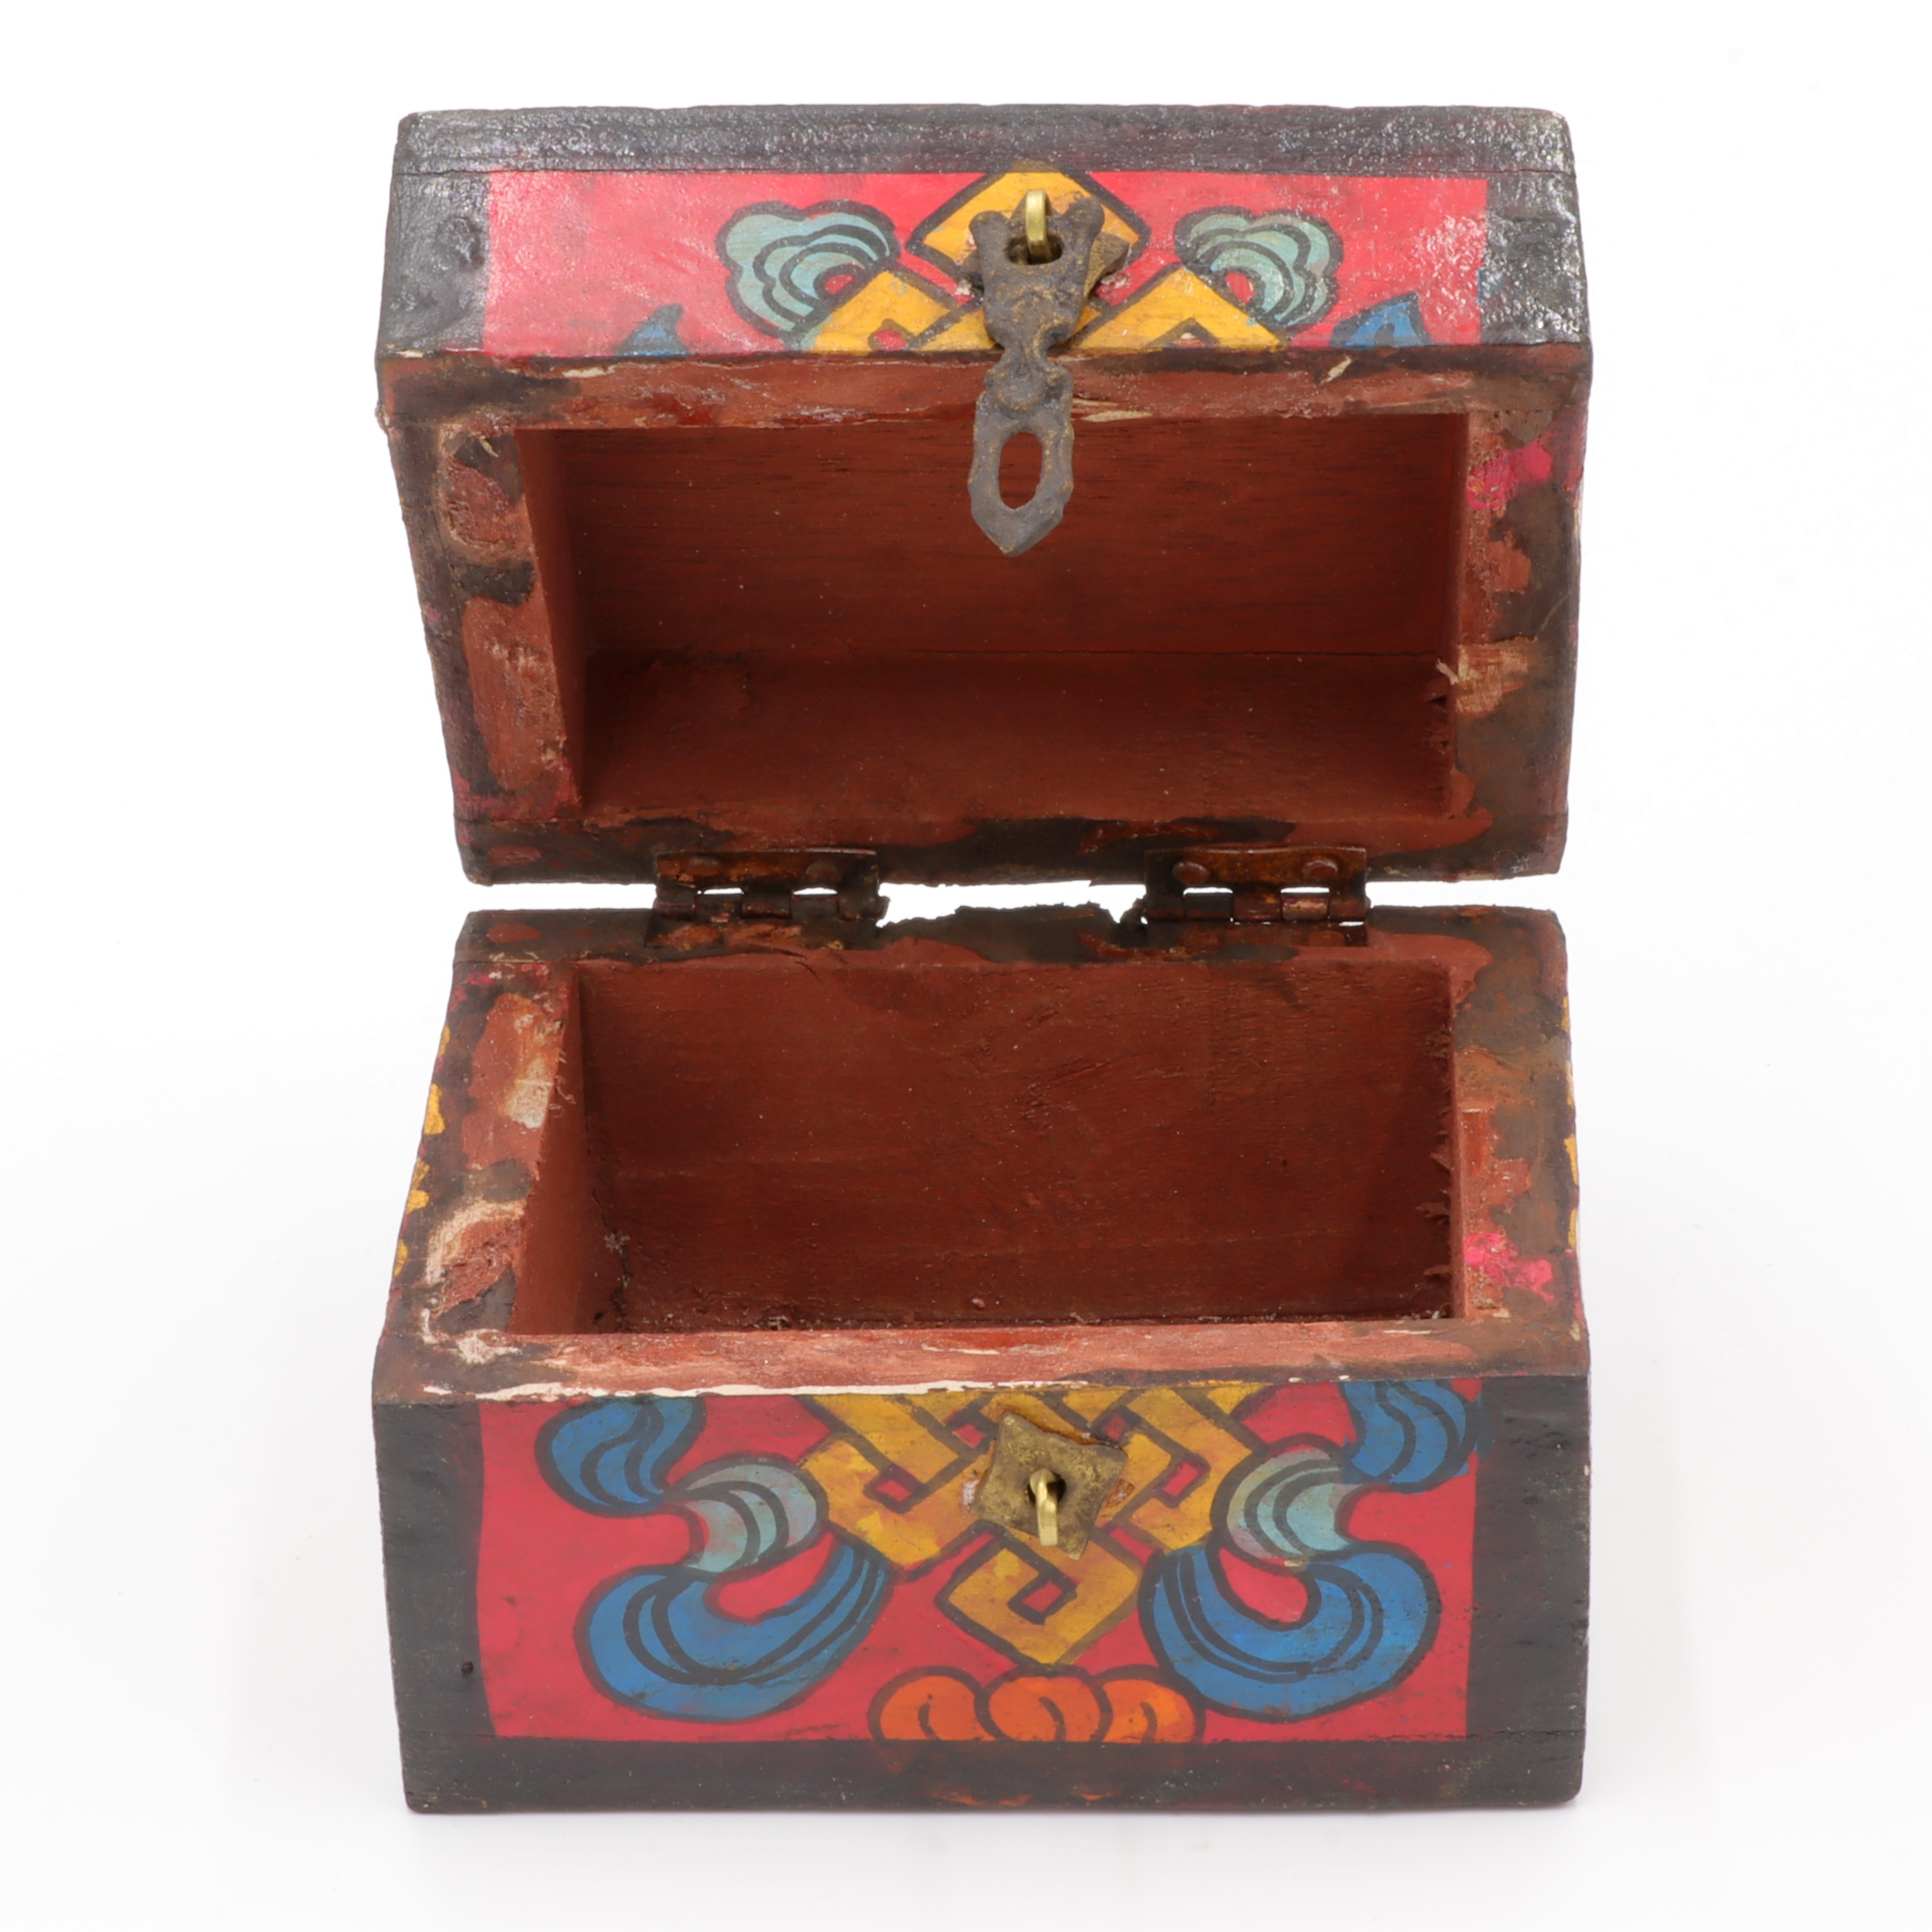 Handbemalte Kiste aus Holz - Endlosknoten - Truhen Design - typisch nepalesiche Farben - hell - fair gehandelt aus Nepal